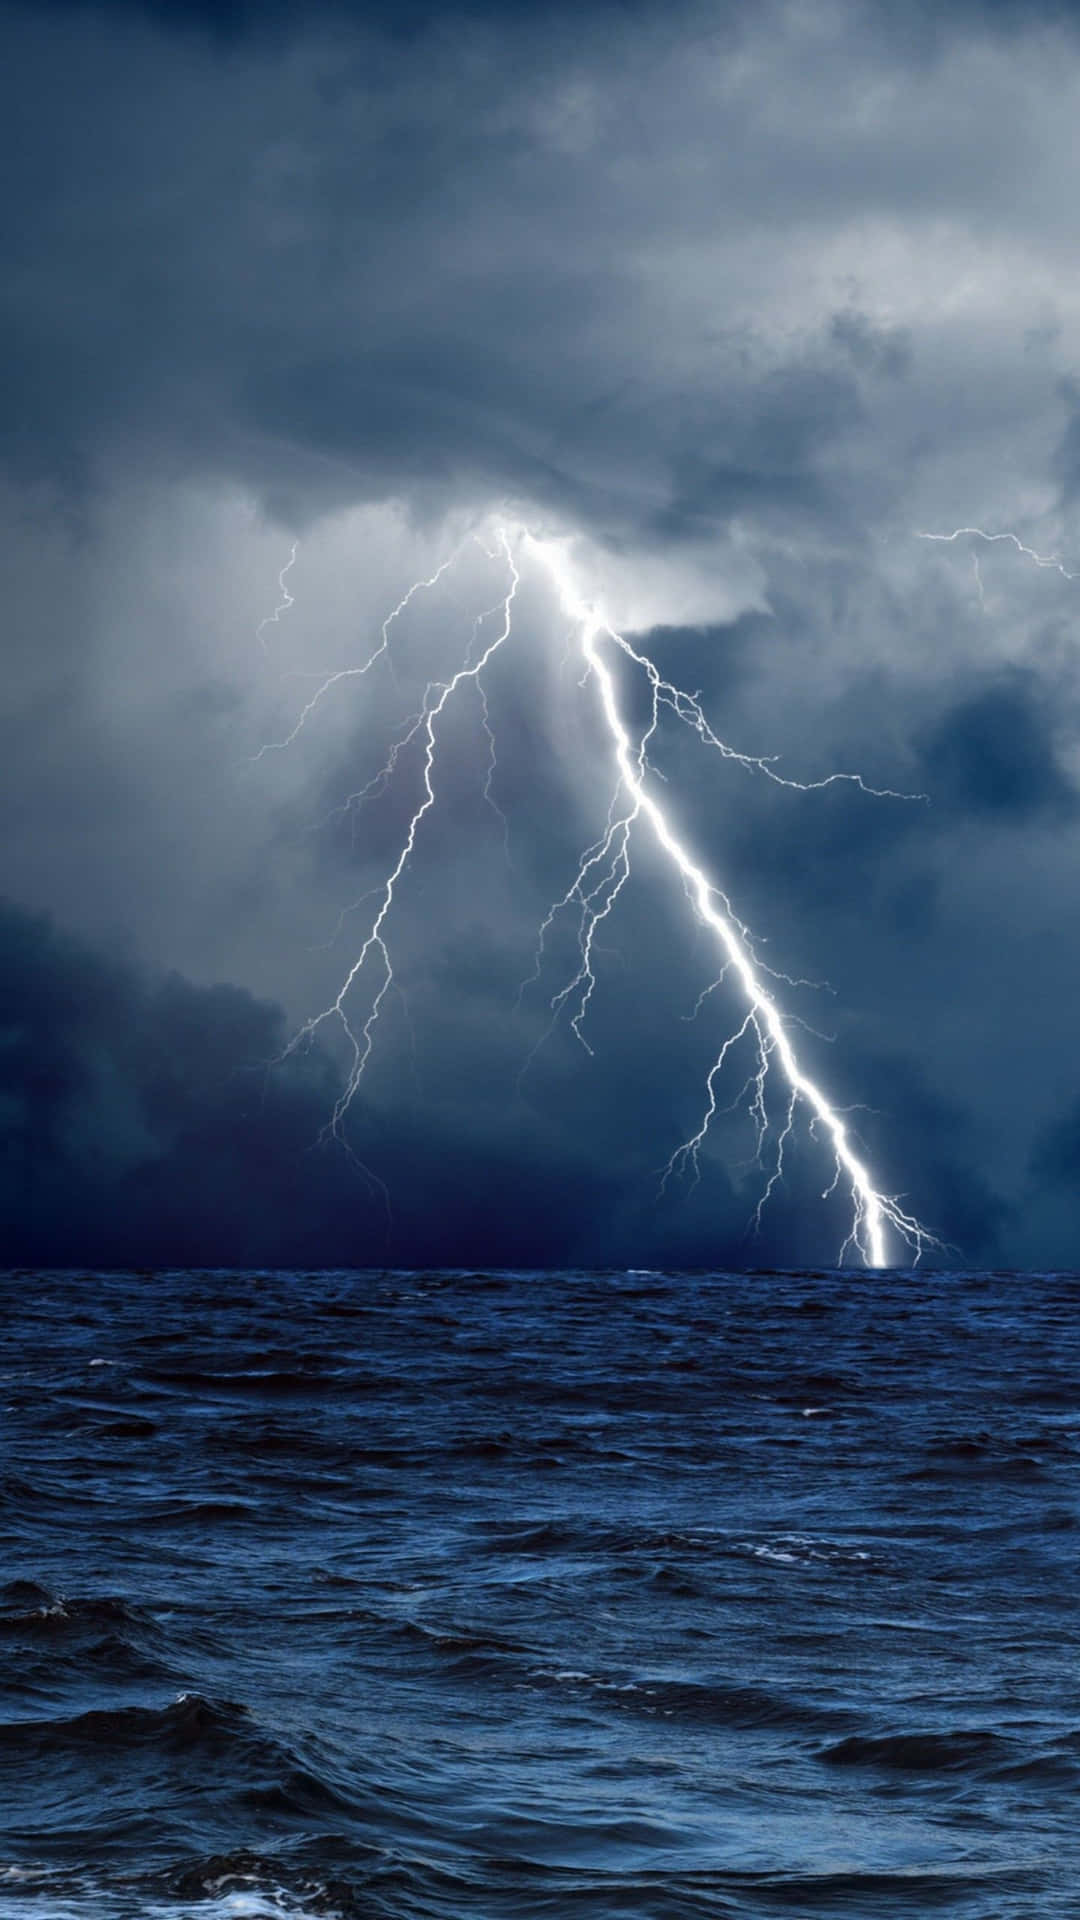 Ocean Storm And Lightning Wallpaper